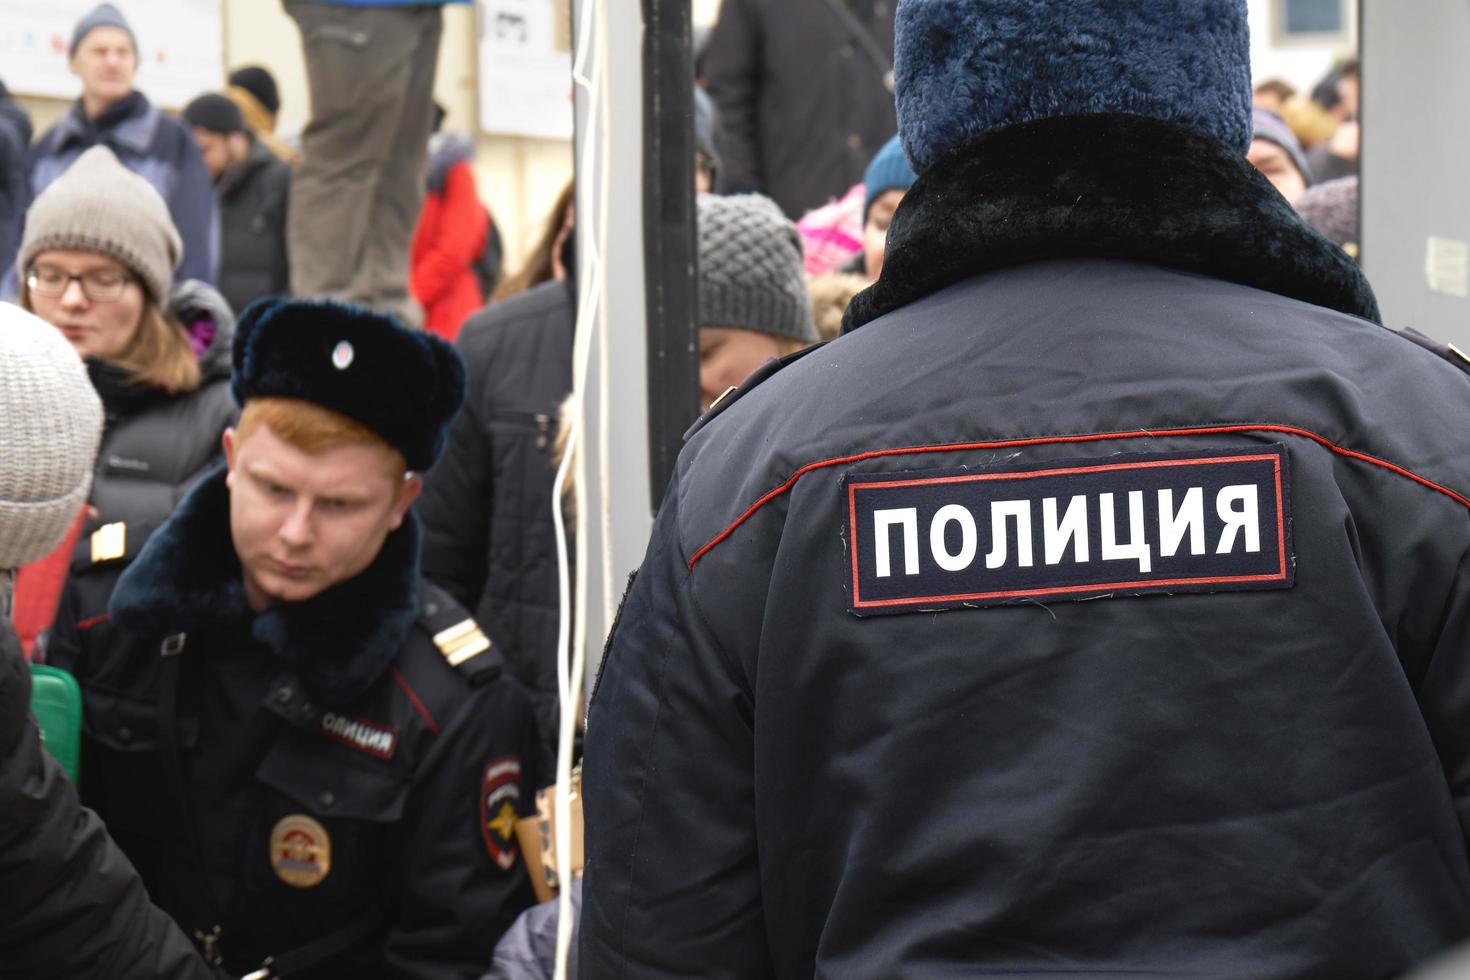 moscou, rússia - 24 de fevereiro de 2019.polícia inspecionando pessoas chegando à marcha da memória nemtsov foto